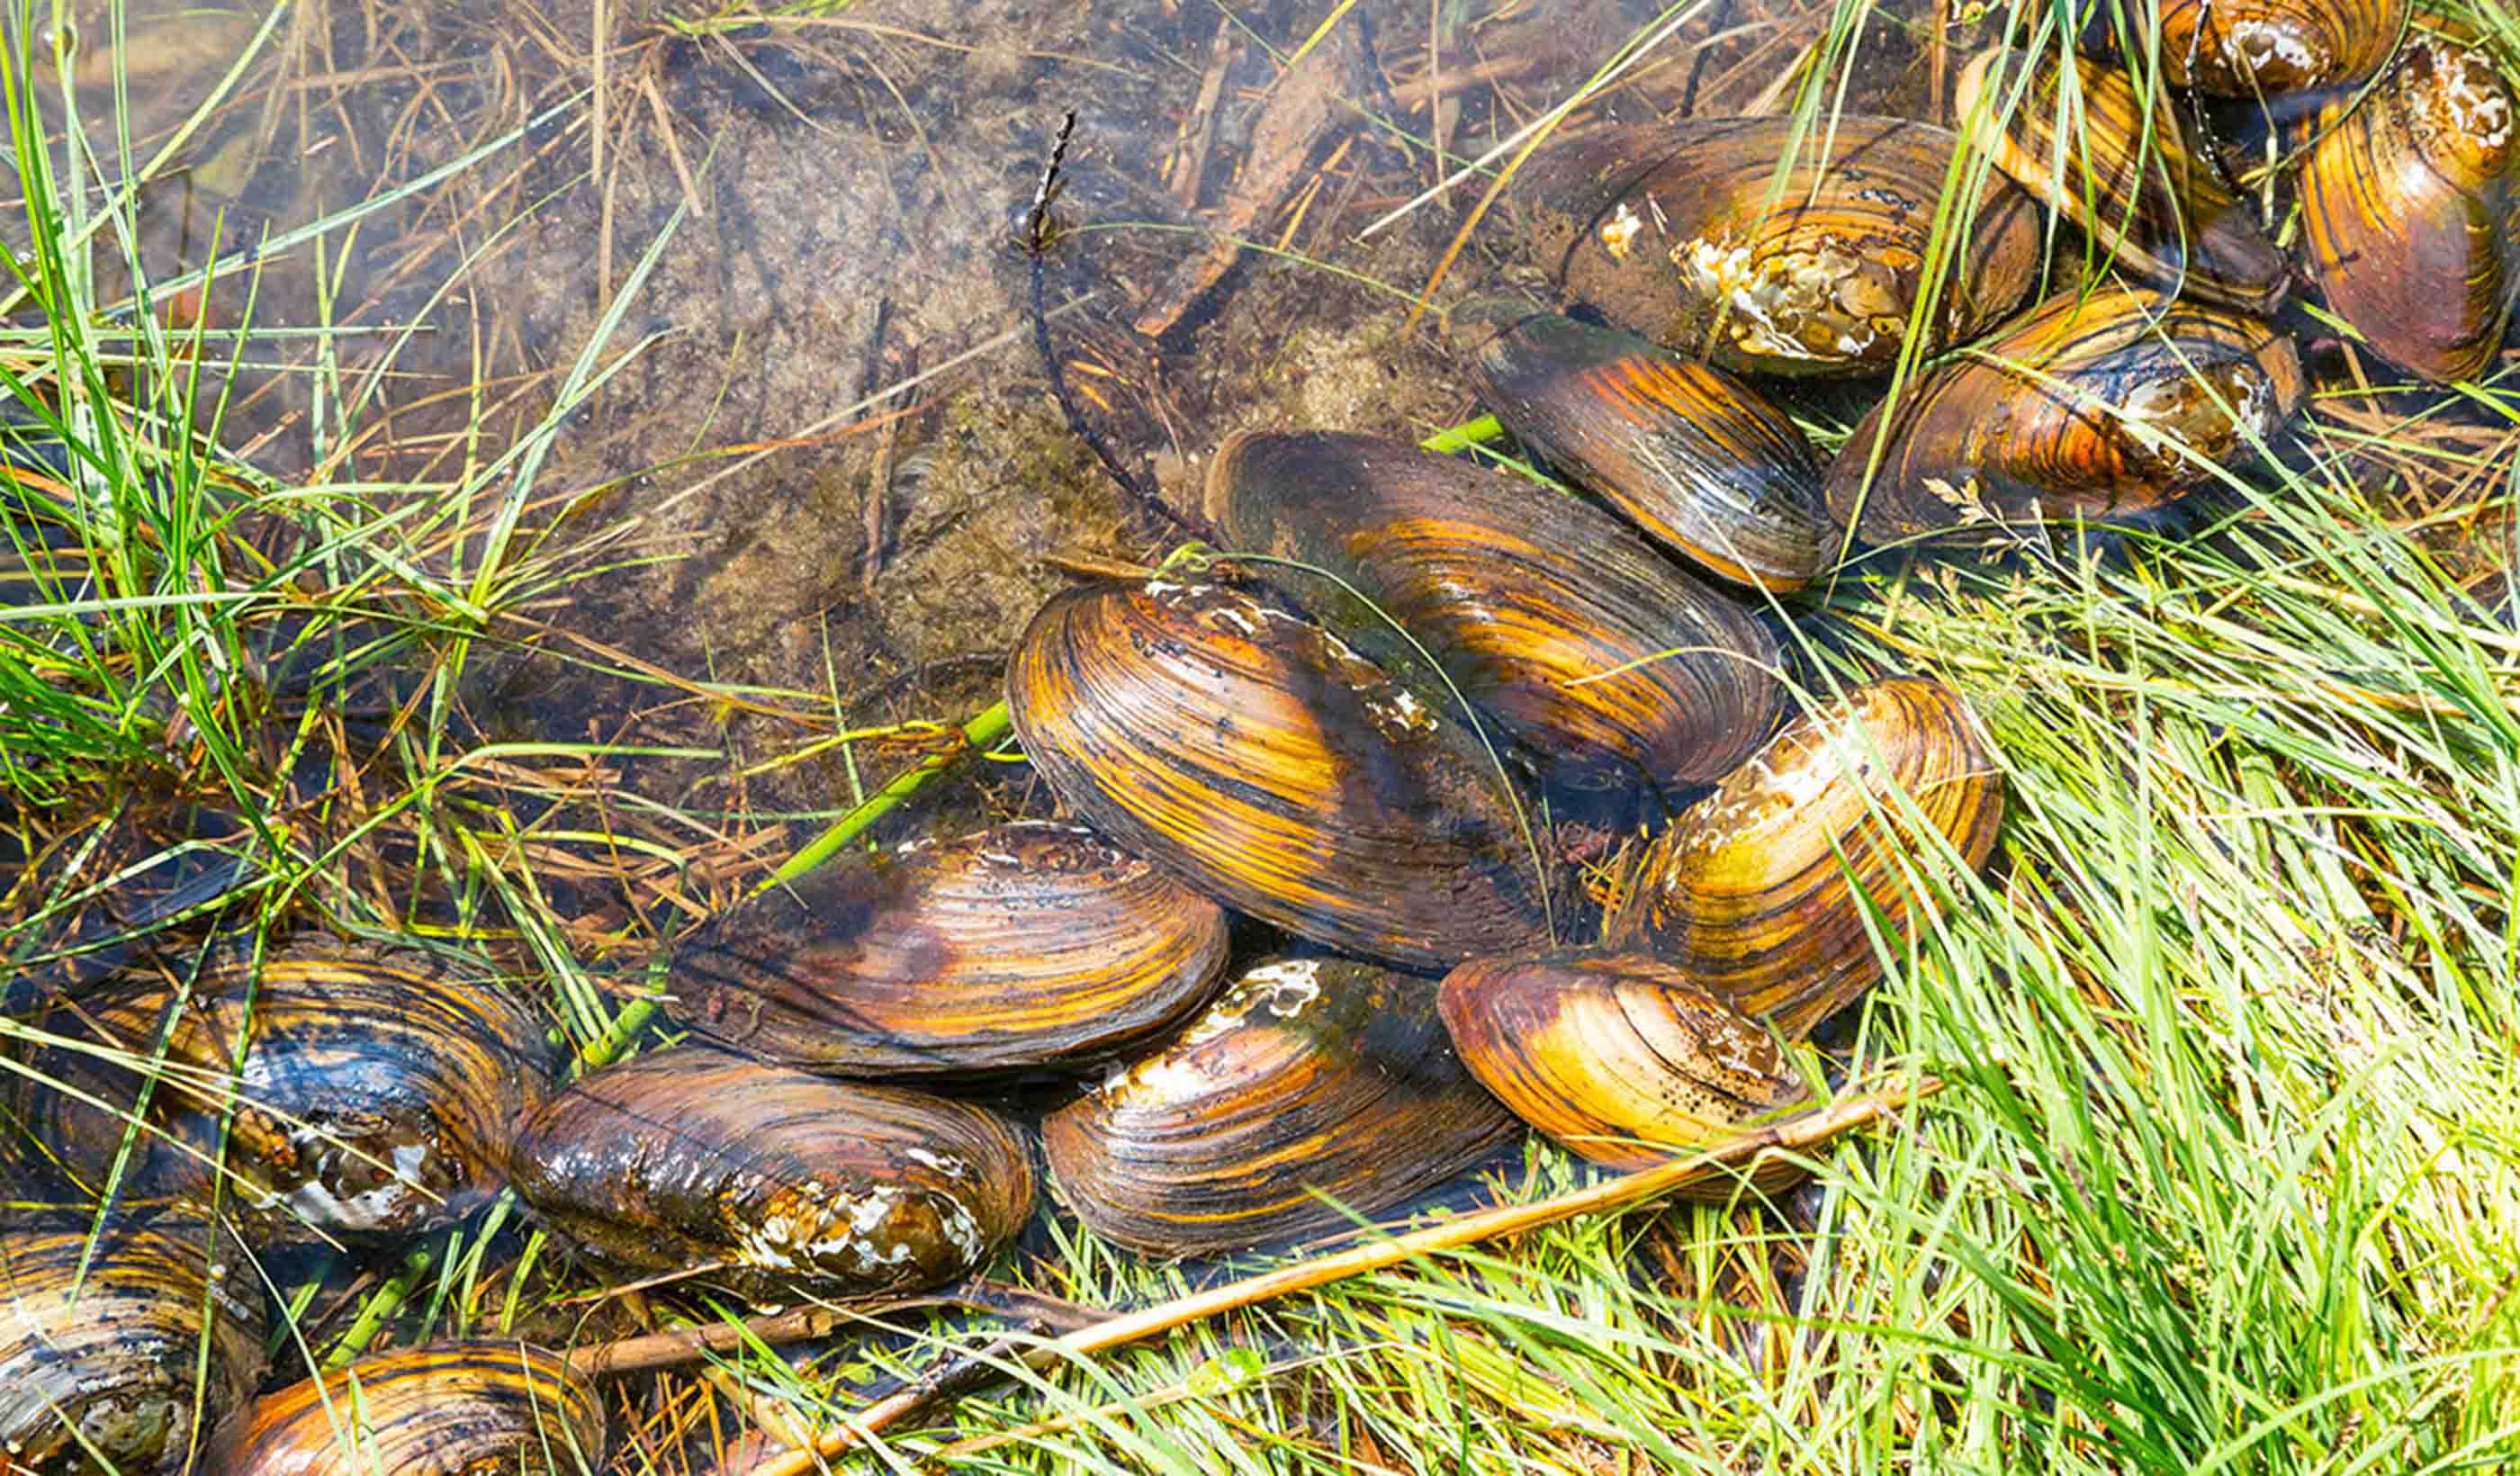 Invasive Mussels Threaten Drinking Water | Whatcom Watch Online